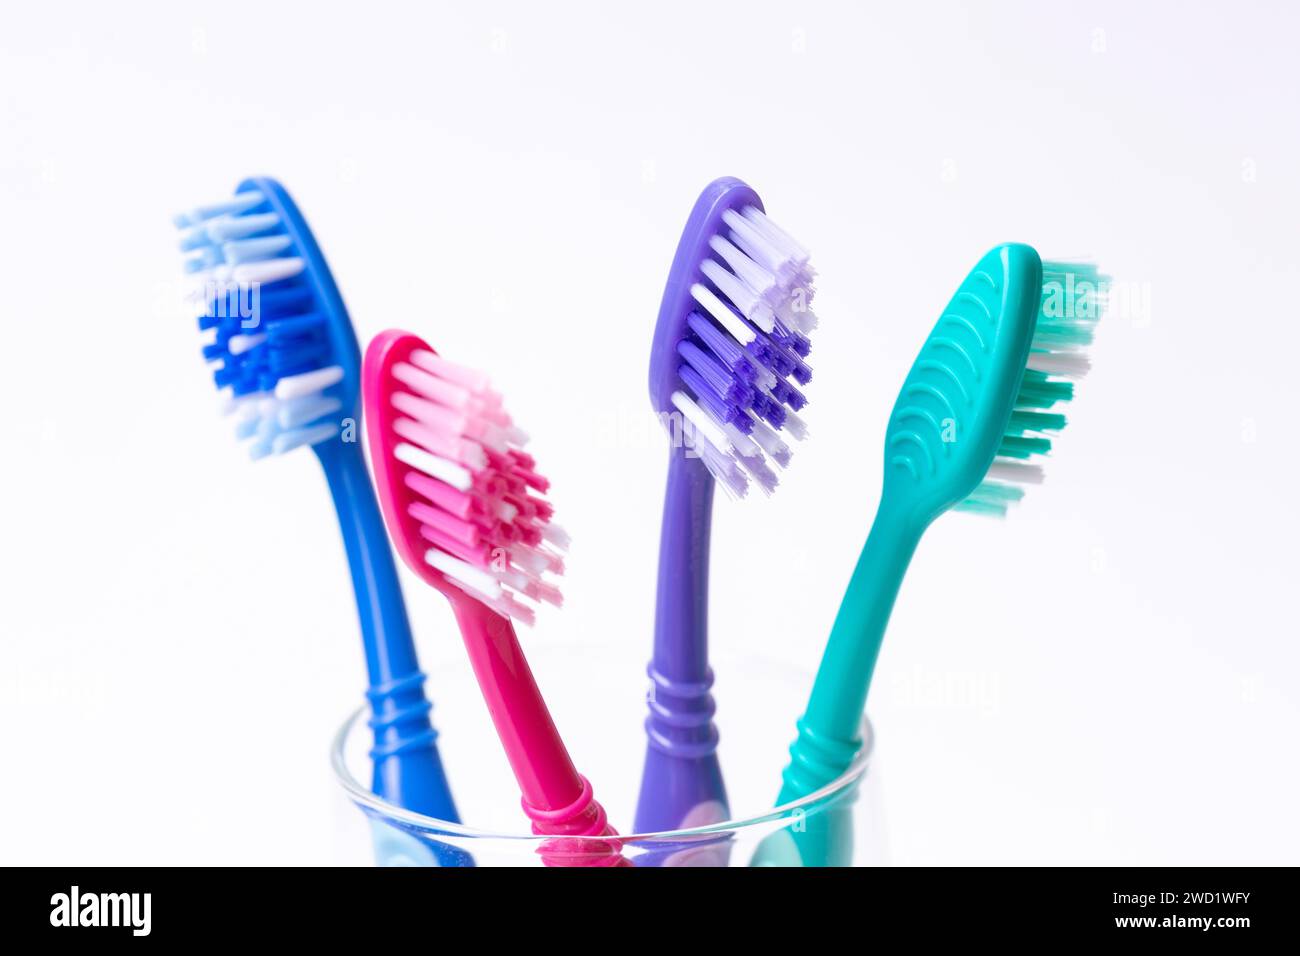 Quatre brosses à dents en plastique colorées Banque D'Images